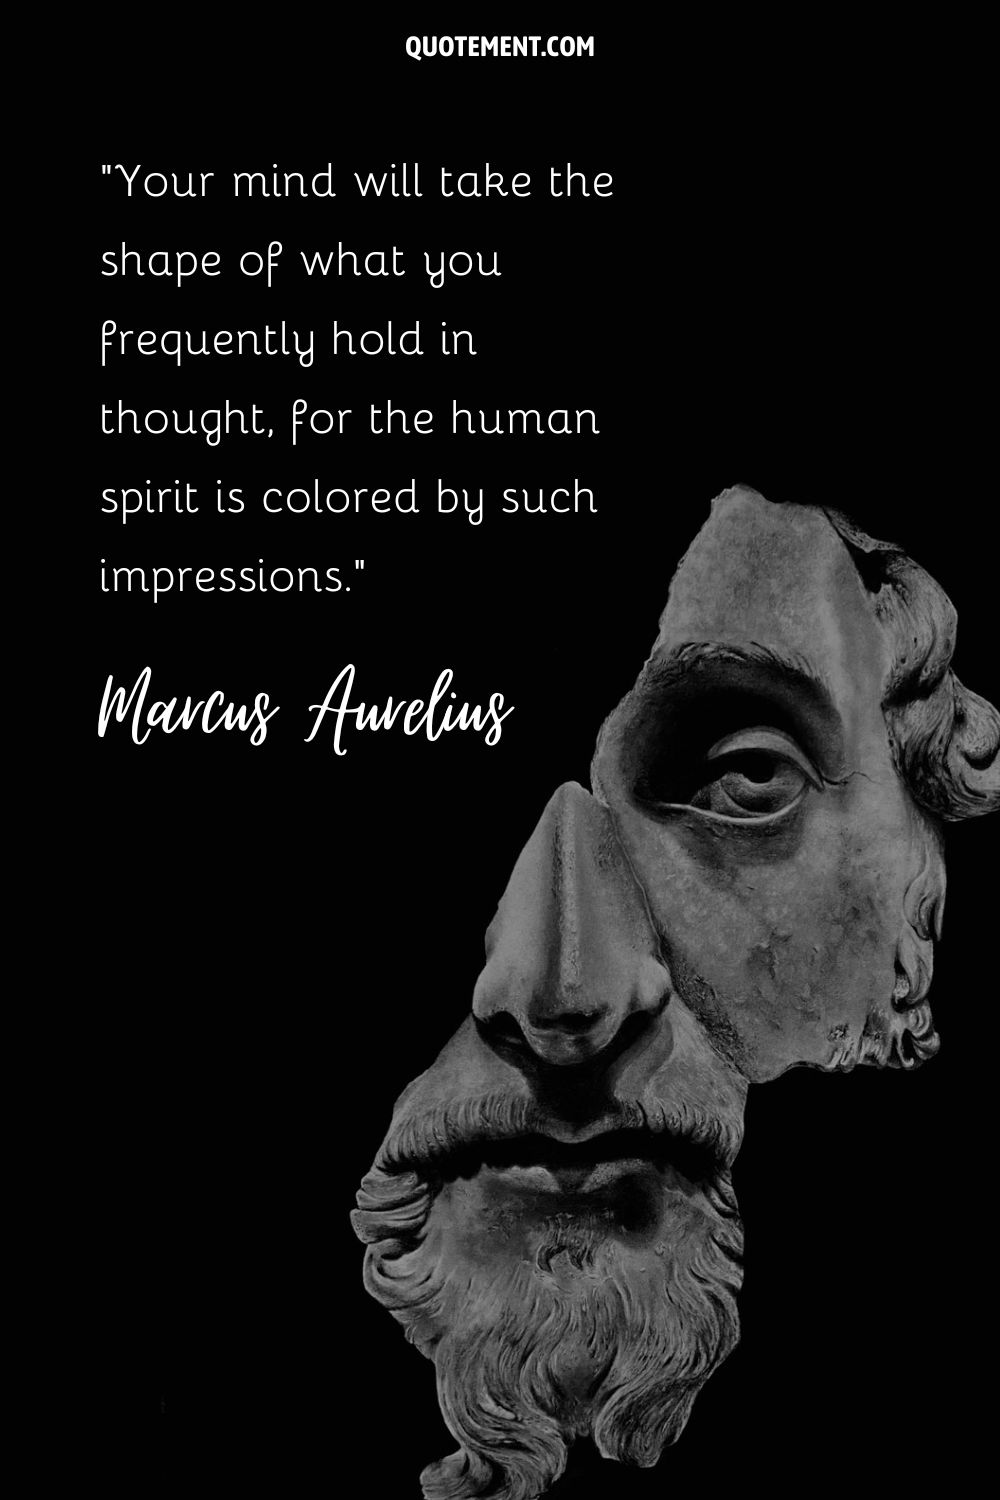 Majestic Marcus Aurelius portrayed in enduring stone sculpture.
